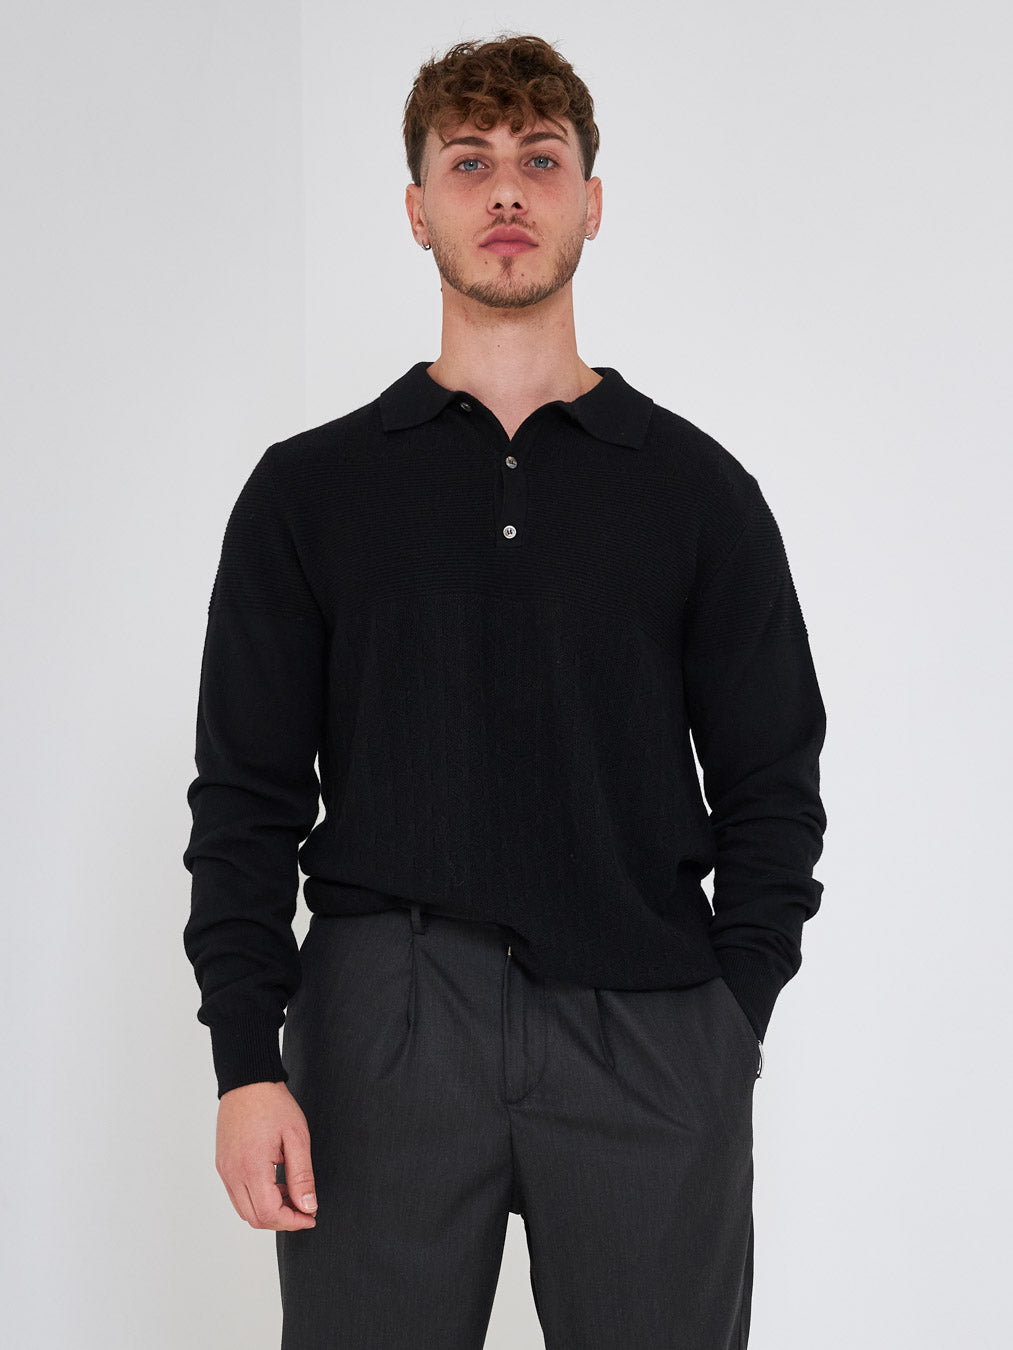 Prime maglione nero con colletto polo